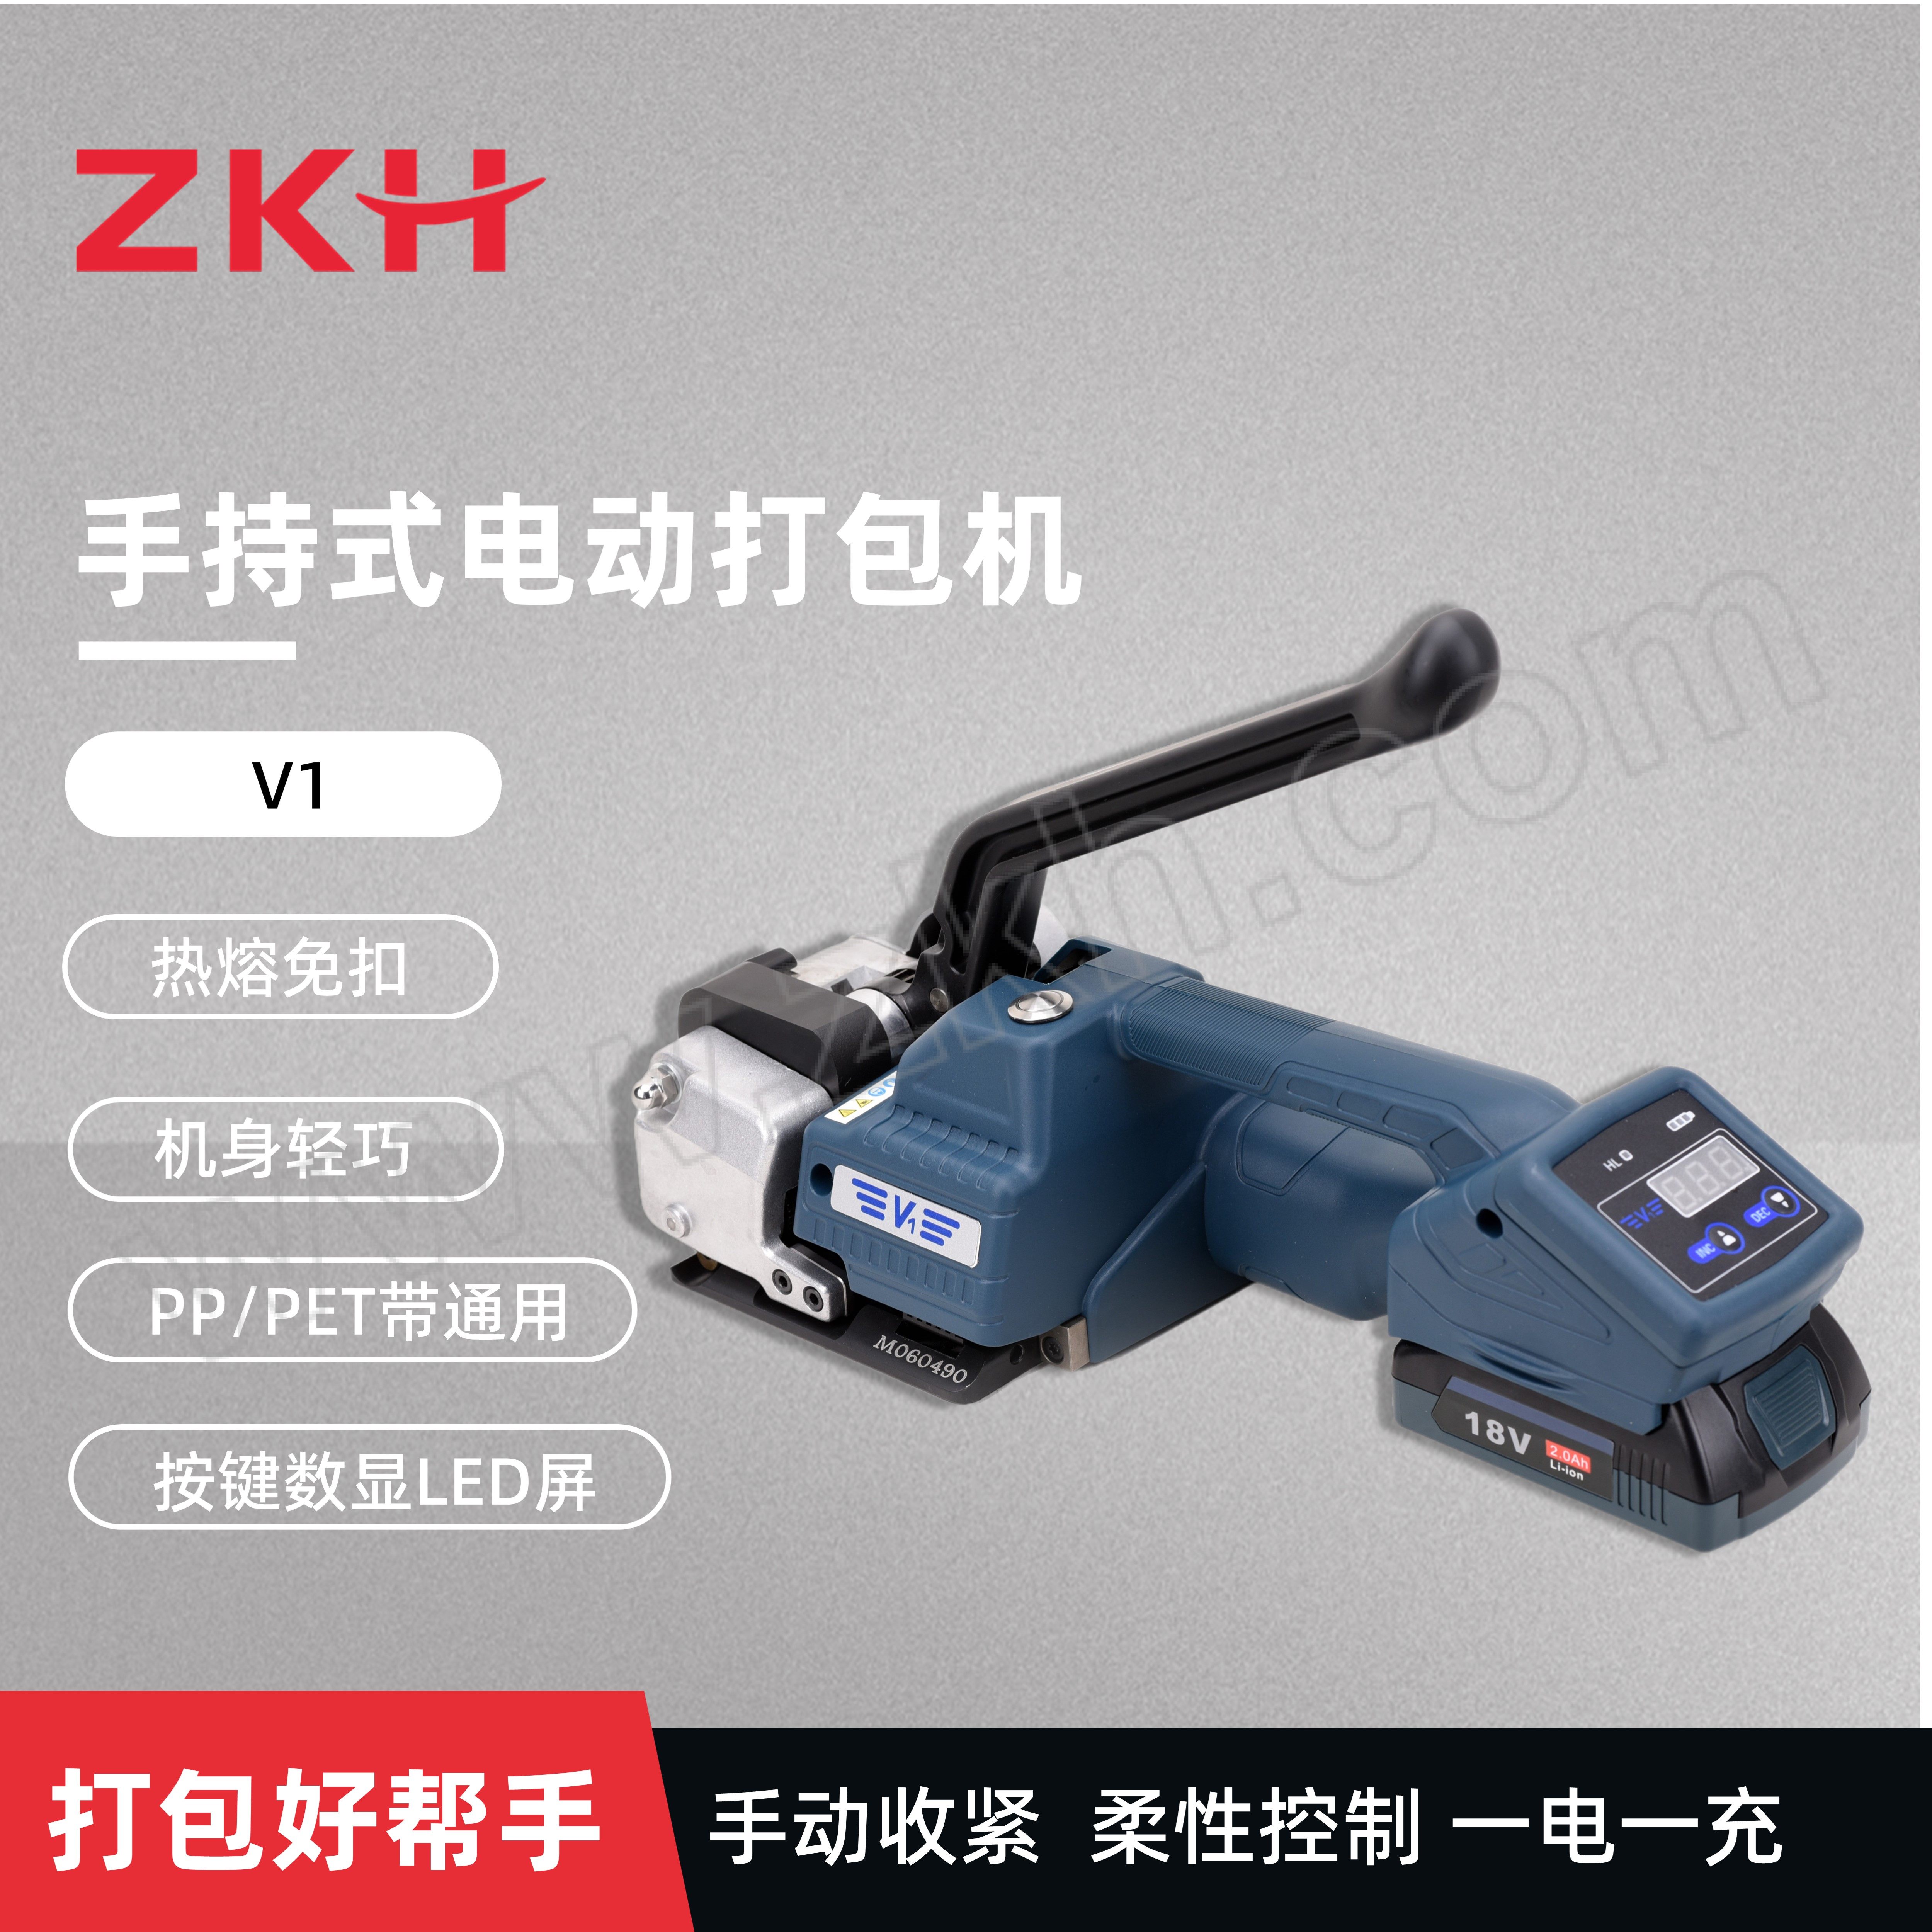 ZKH/震坤行 PP/PET手紧式电动打包机 V1 打包带宽度13~16mm 厚度0.4~1.2mm 拉紧力2800N 18V 2Ah 1台